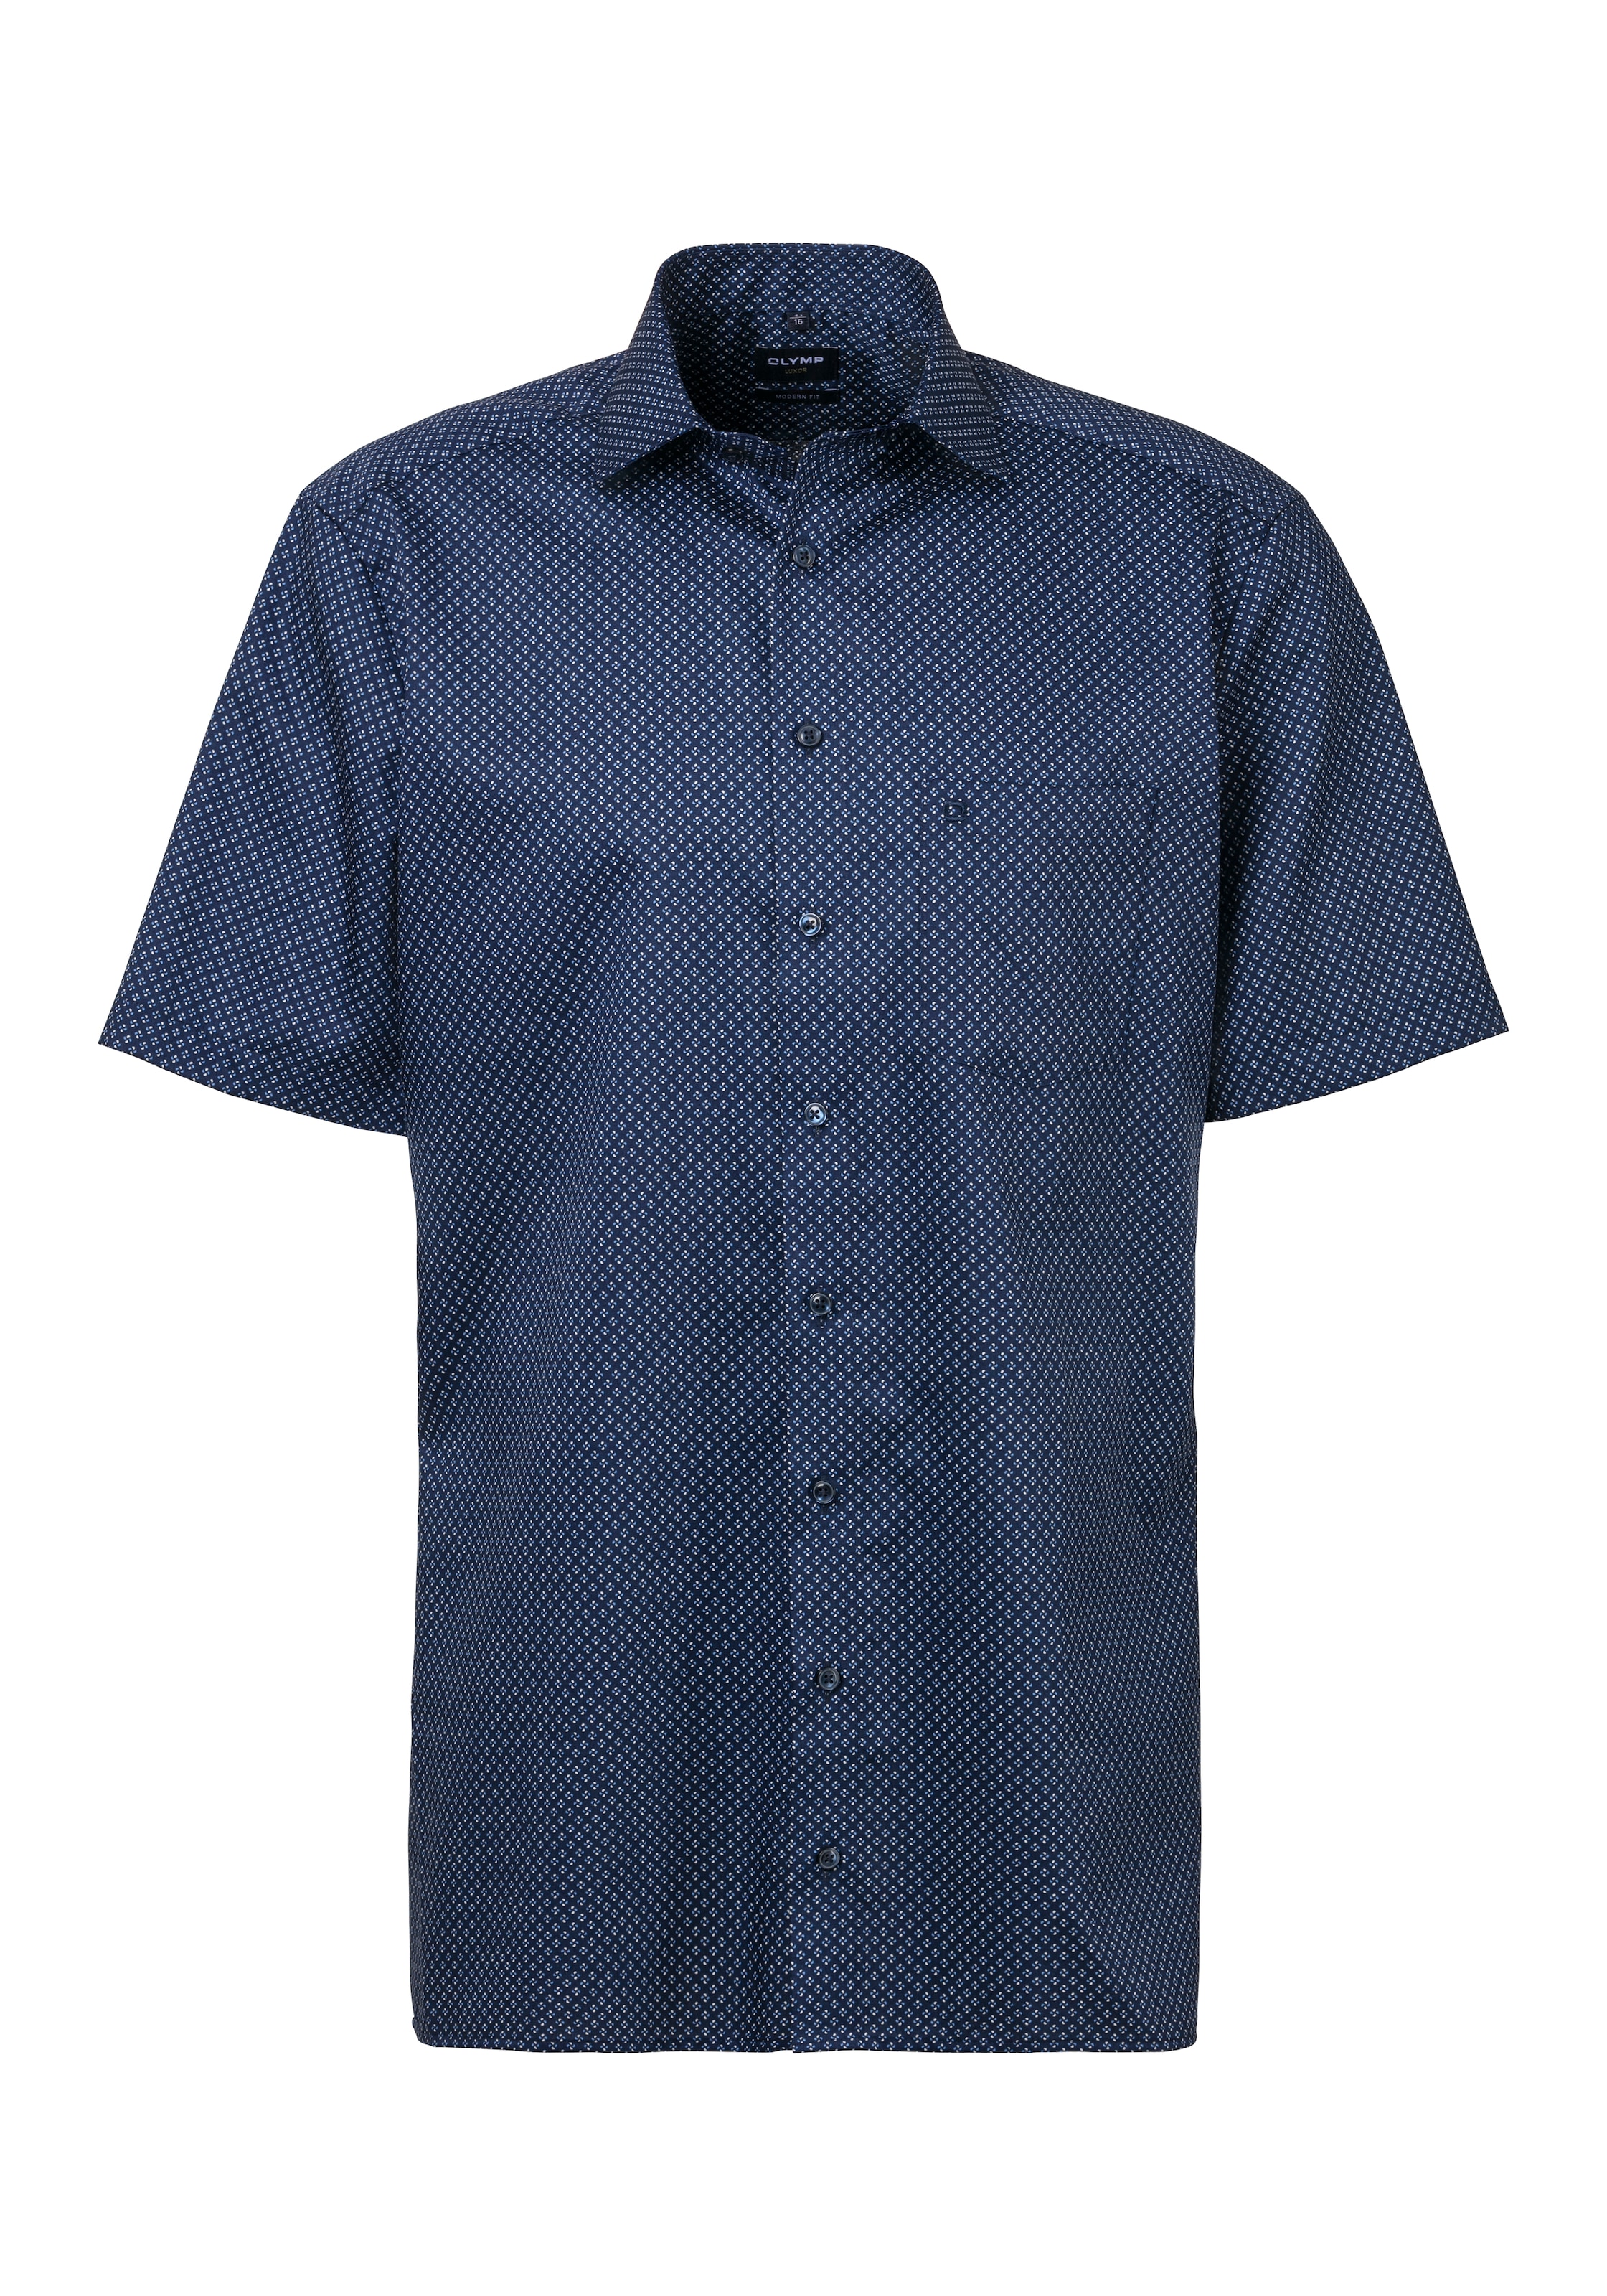 OLYMP Kurzarmhemd "Luxor", mit modischem Muster, Pflege- und Bügelleichtigkeit